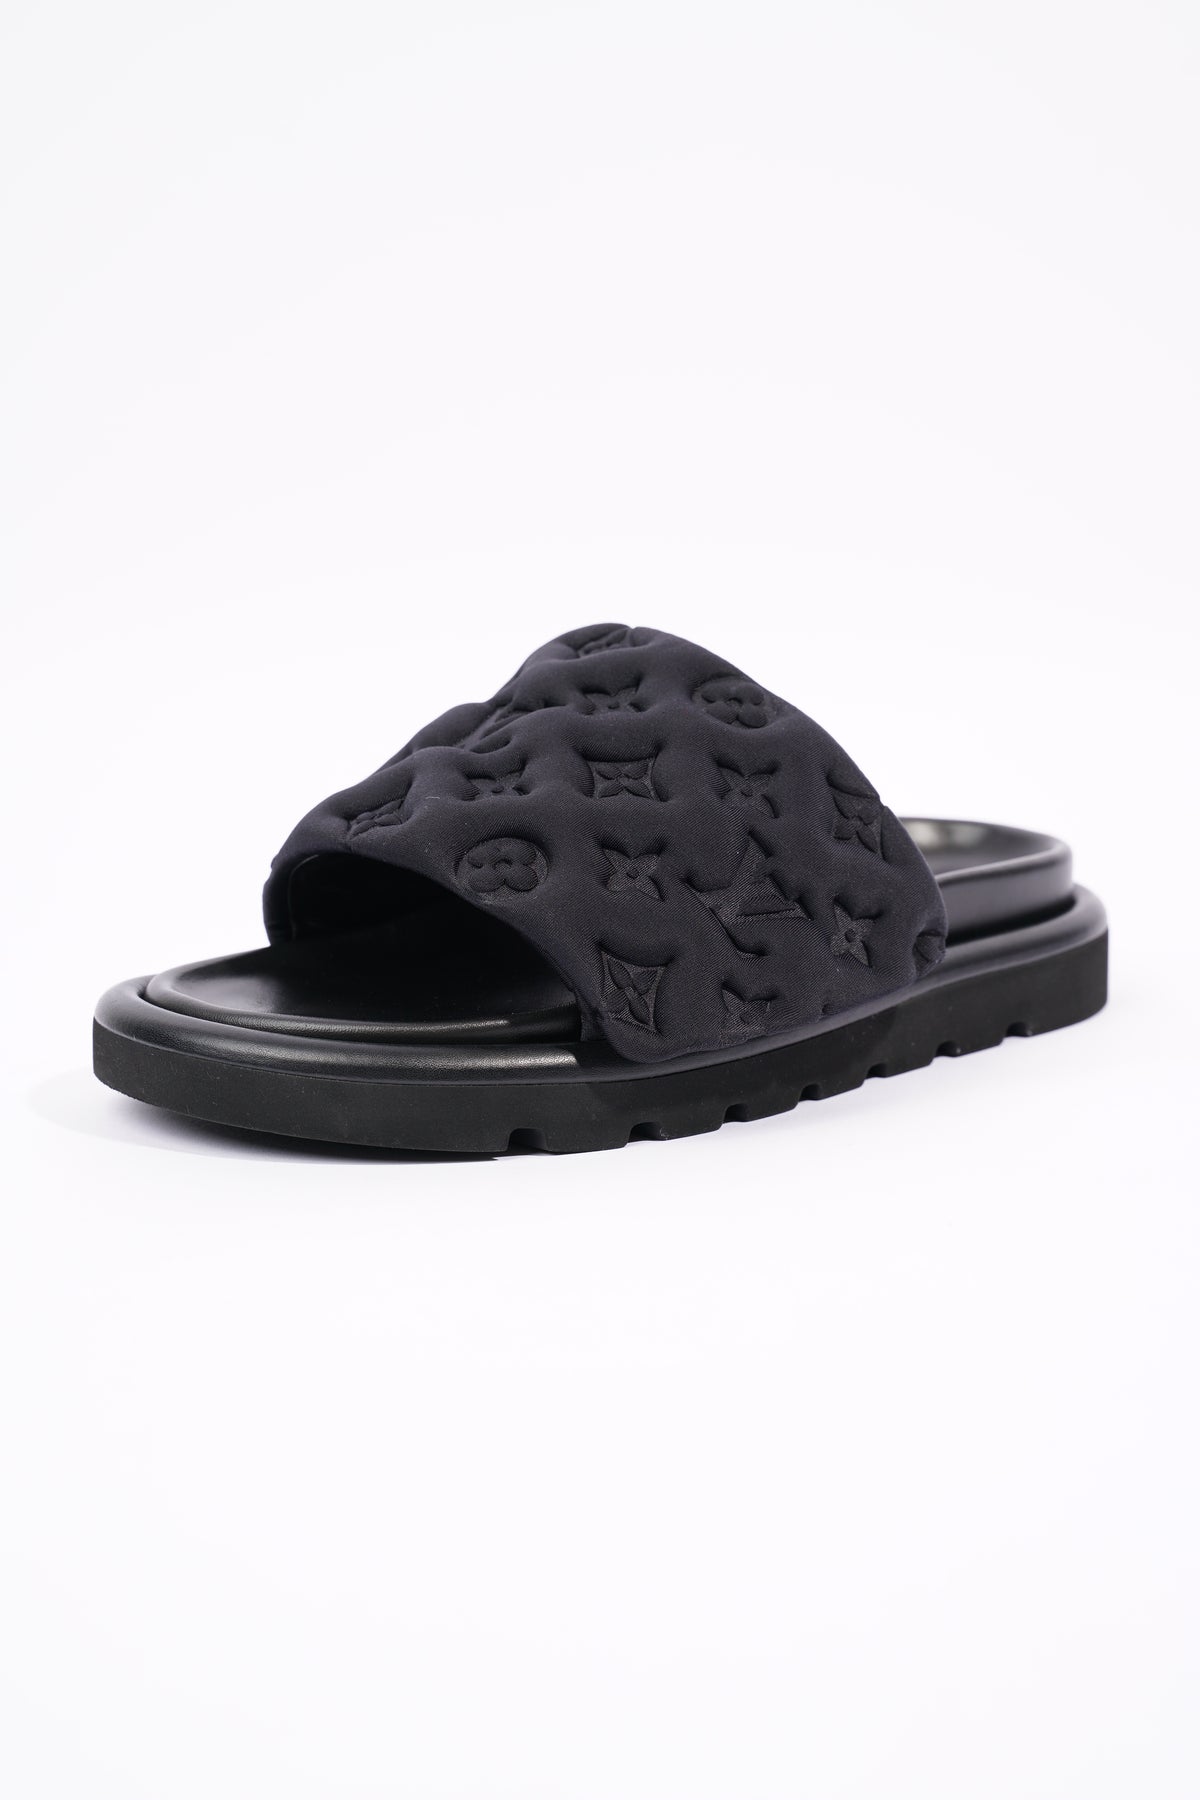 Louis Vuitton Pool Pillow Flat Comfort Mule Open Toe Slip On Slides Sandals  Shoe